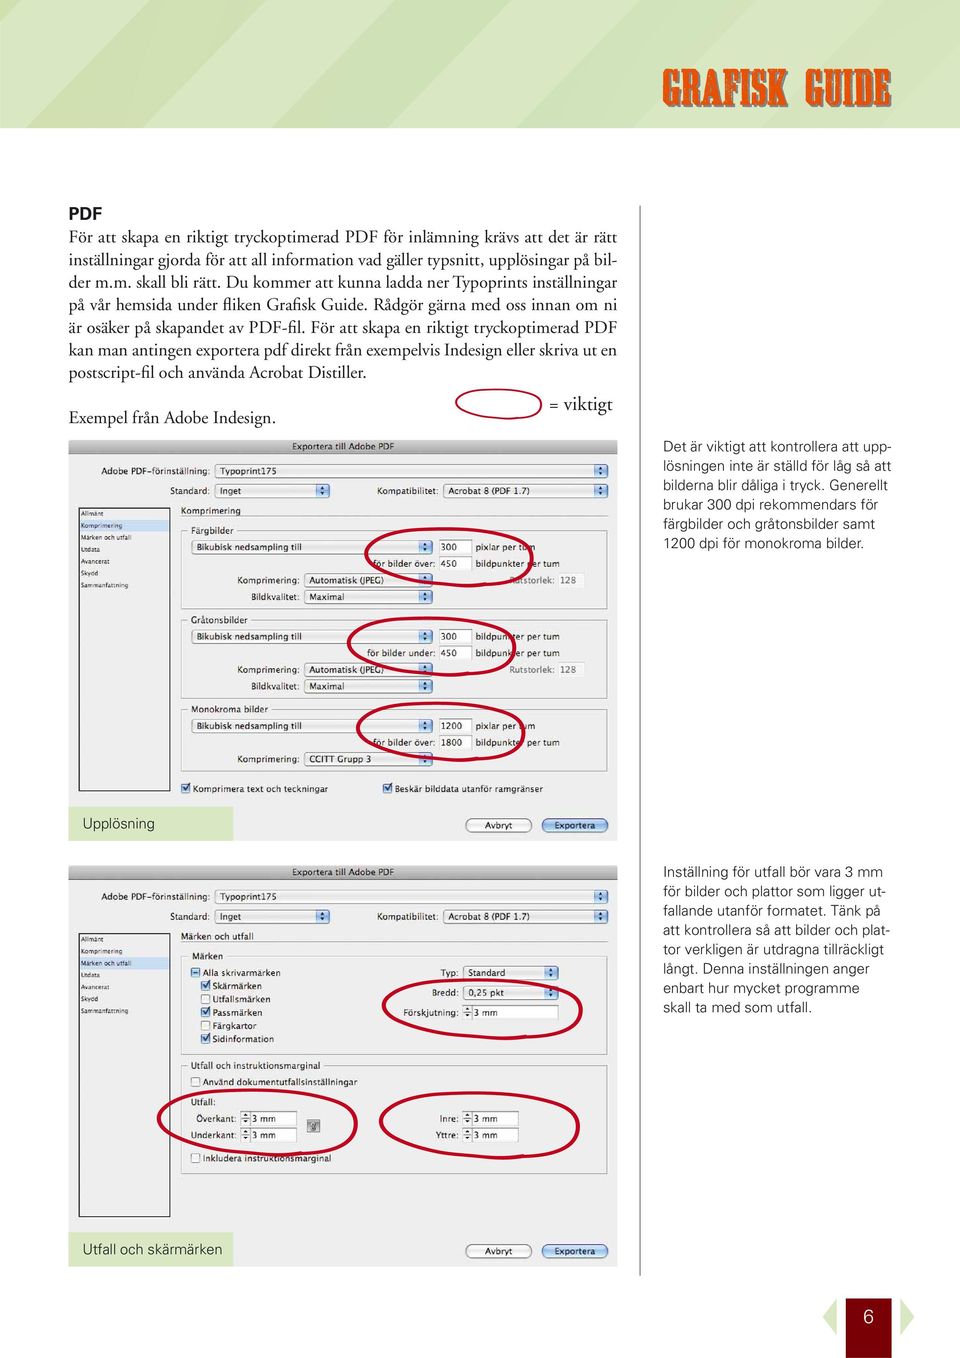 För att skapa en riktigt tryckoptimerad PDF kan man antingen exportera pdf direkt från exempelvis Indesign eller skriva ut en postscript-fil och använda Acrobat Distiller.